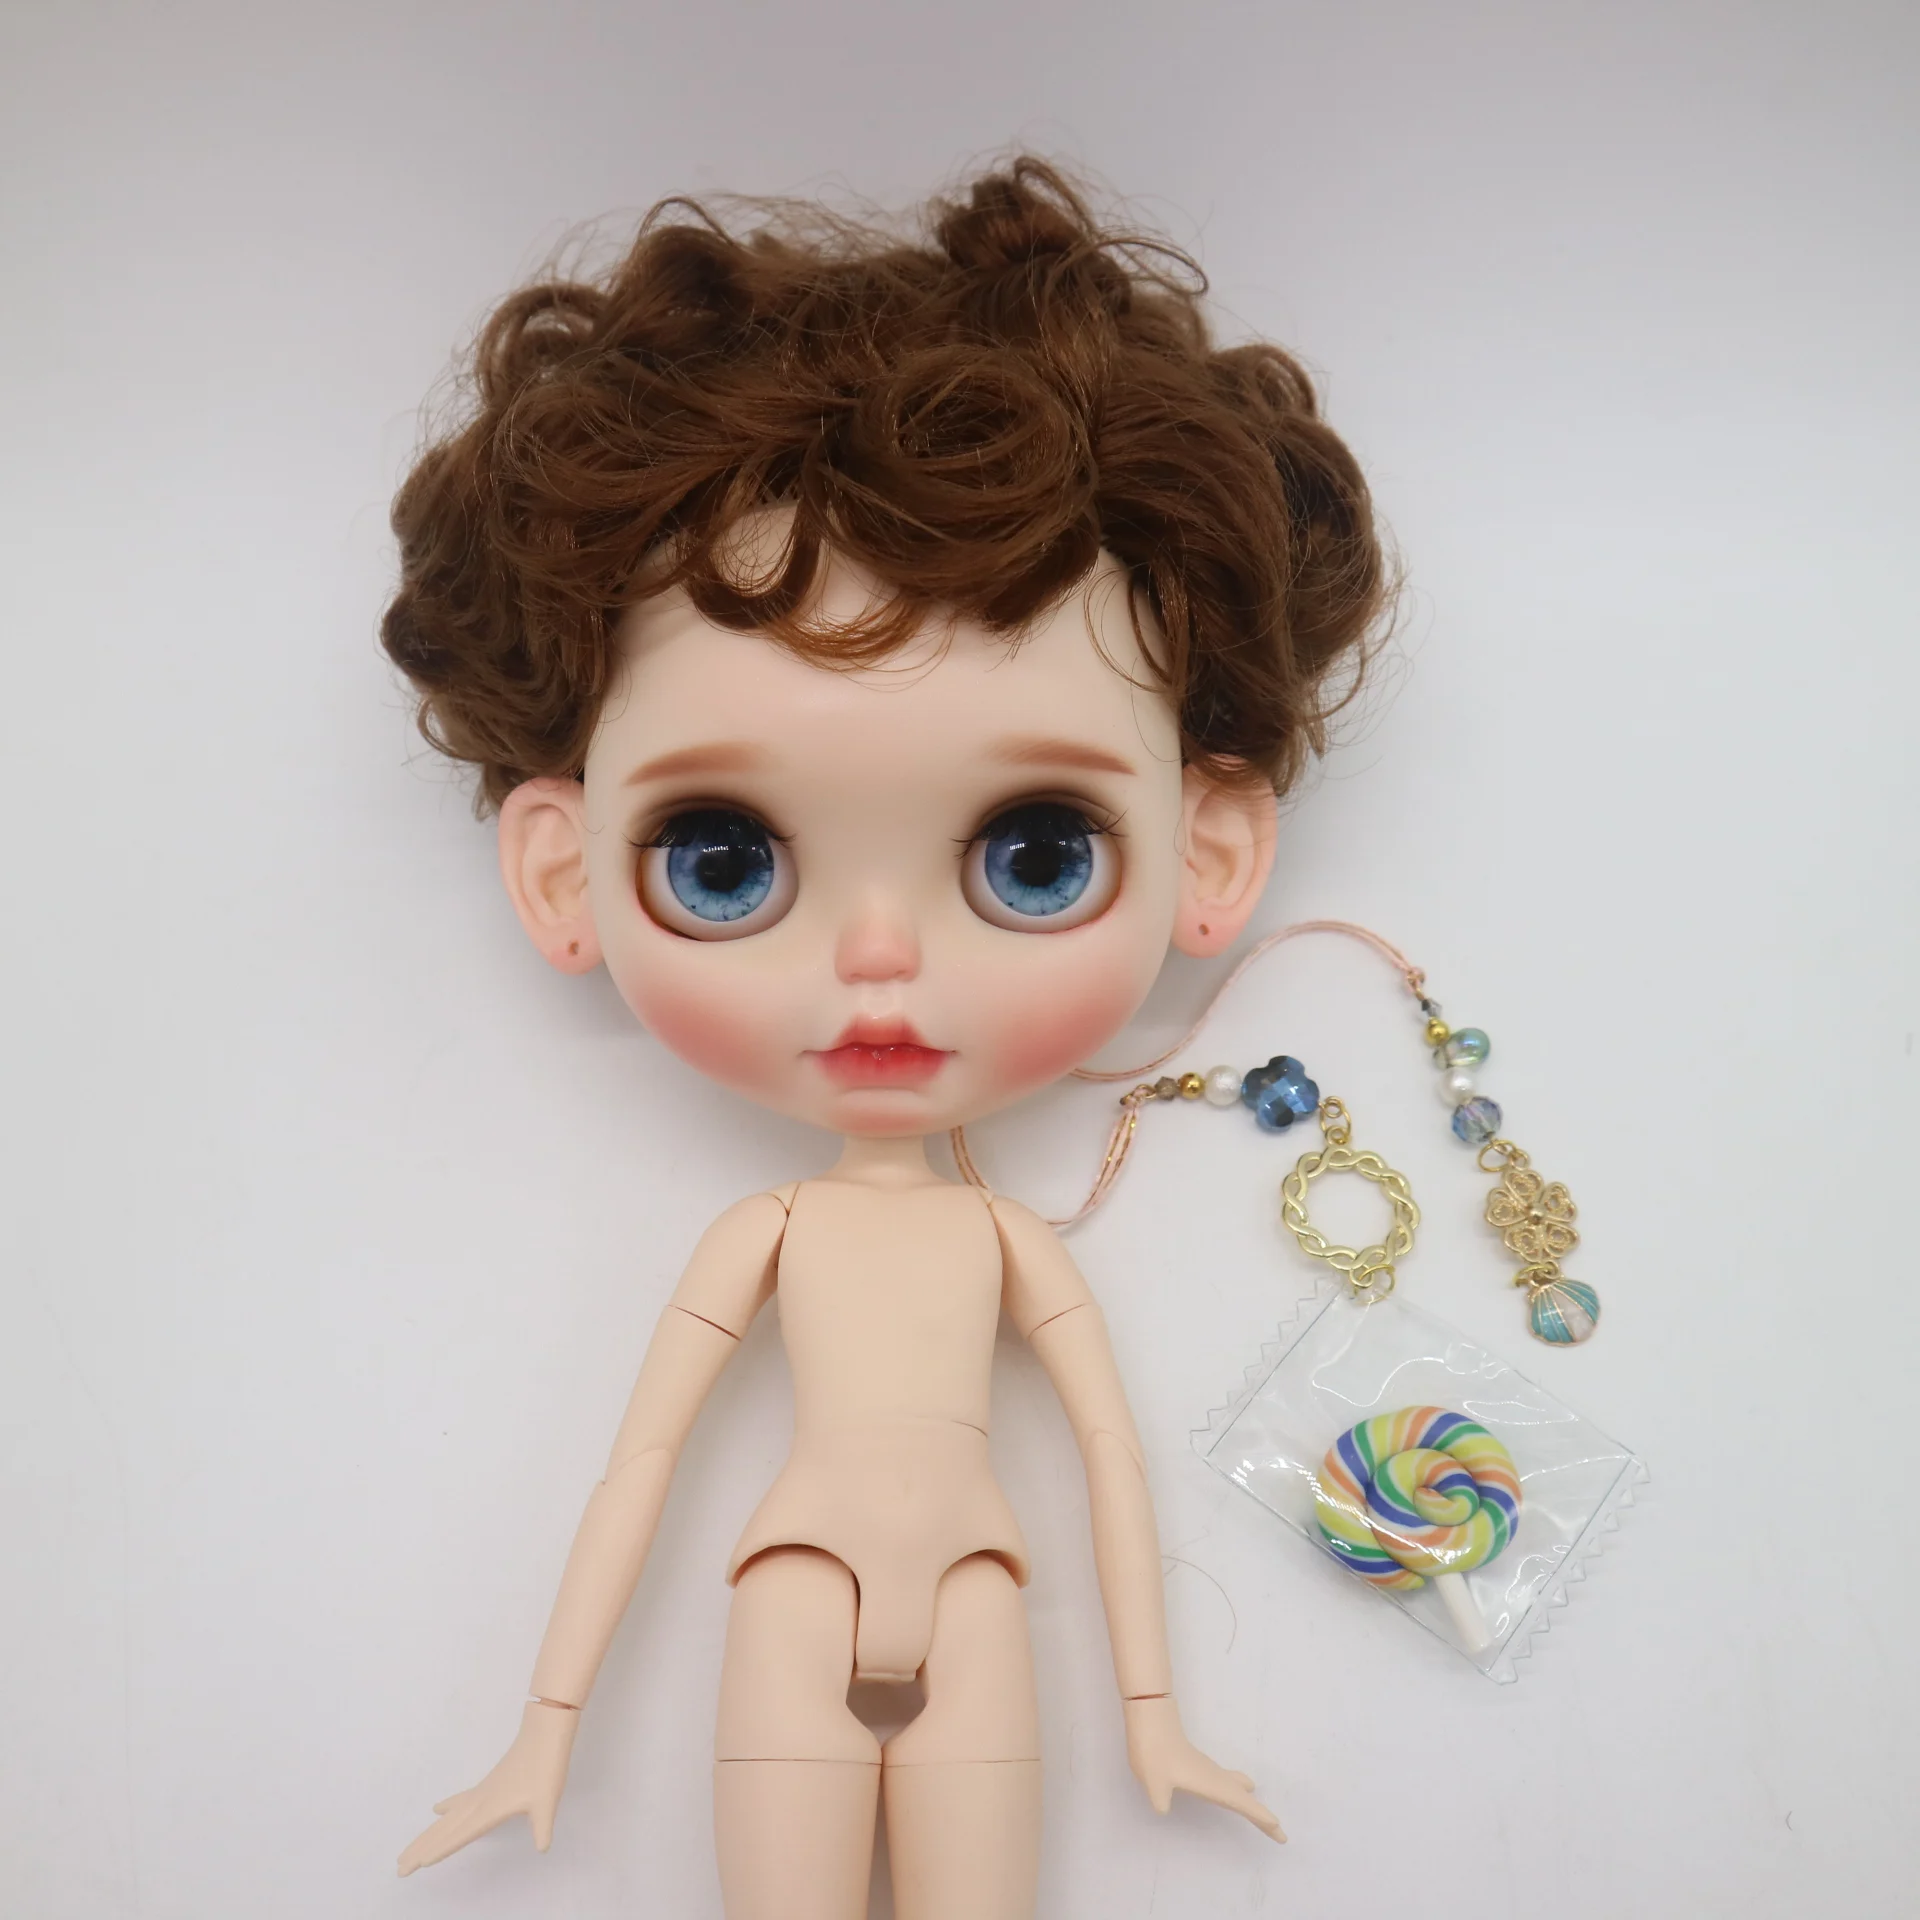 Изготовление на заказ кукла DIY цельная кукла без одежды Блит кукла для девочек Обнаженная Кукла Прекрасная кукла мальчик